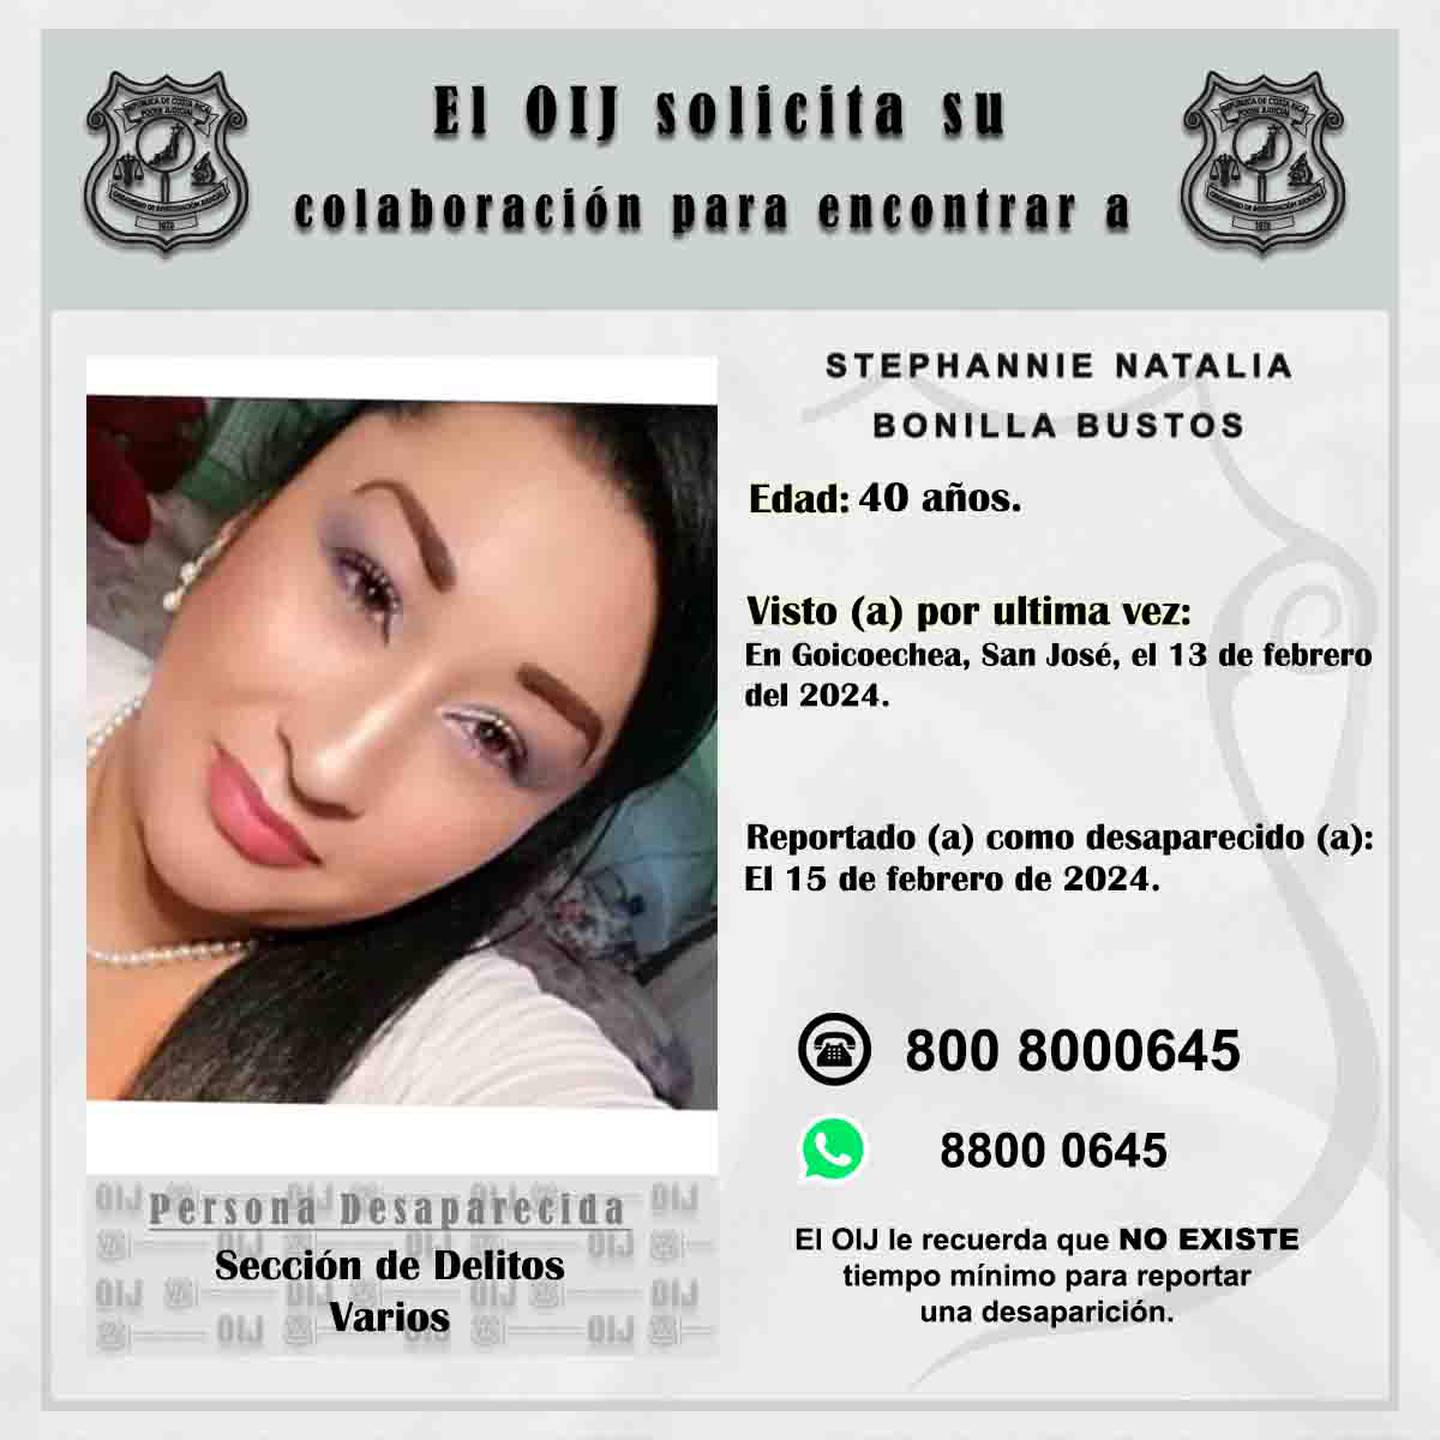 Stephannie Natalia Bonilla Bustos es una mamá de 40 años y está desaparecida desde el martes 13 de febrero anterior. Foto: OIJ